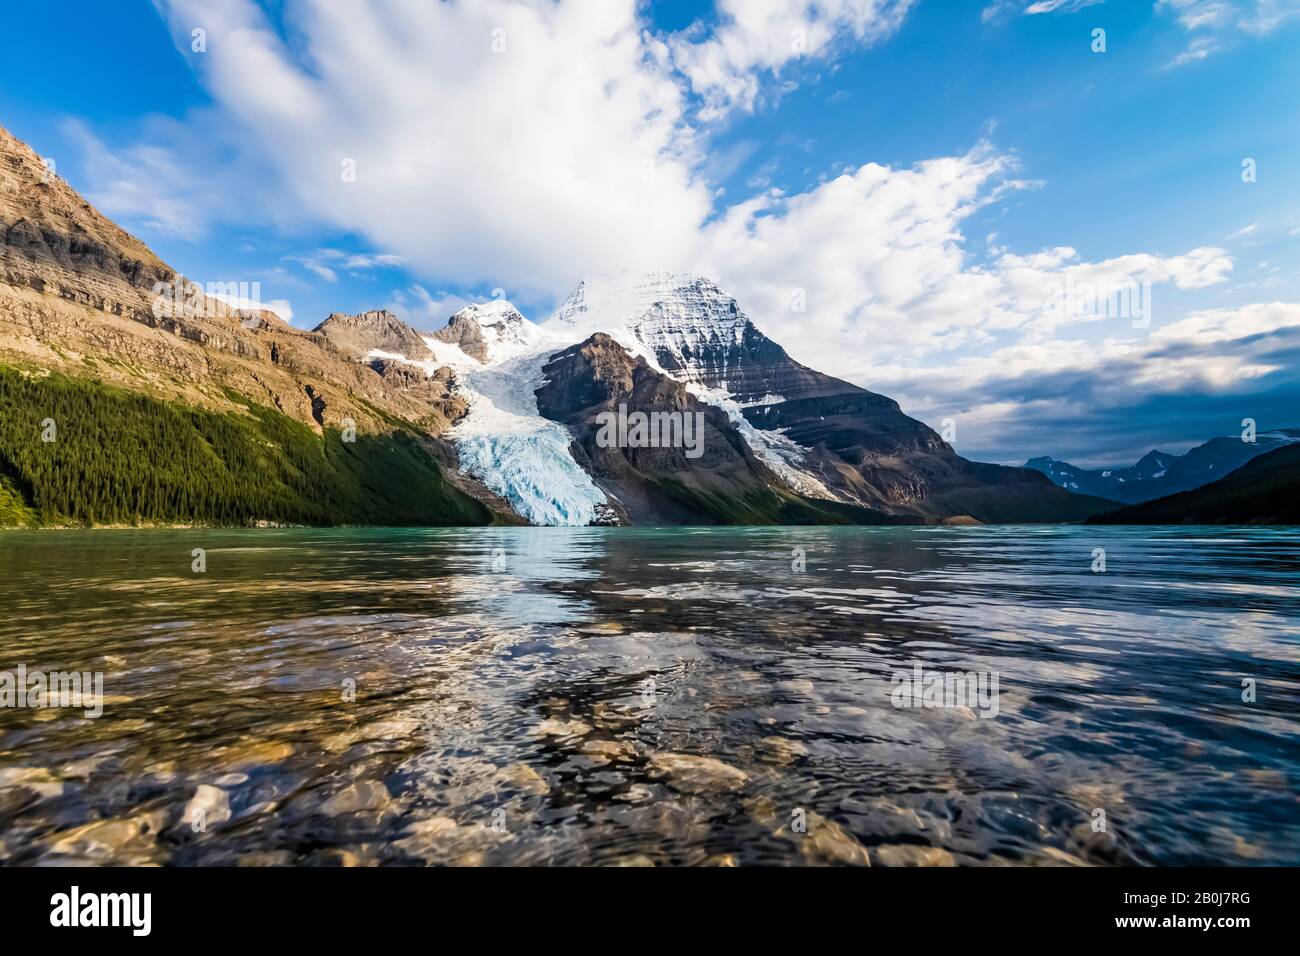 Lac Berg avec le glacier Berg et la présence imposante du mont Robson, parc provincial du Mont Robson, Colombie-Britannique, Canada Banque D'Images